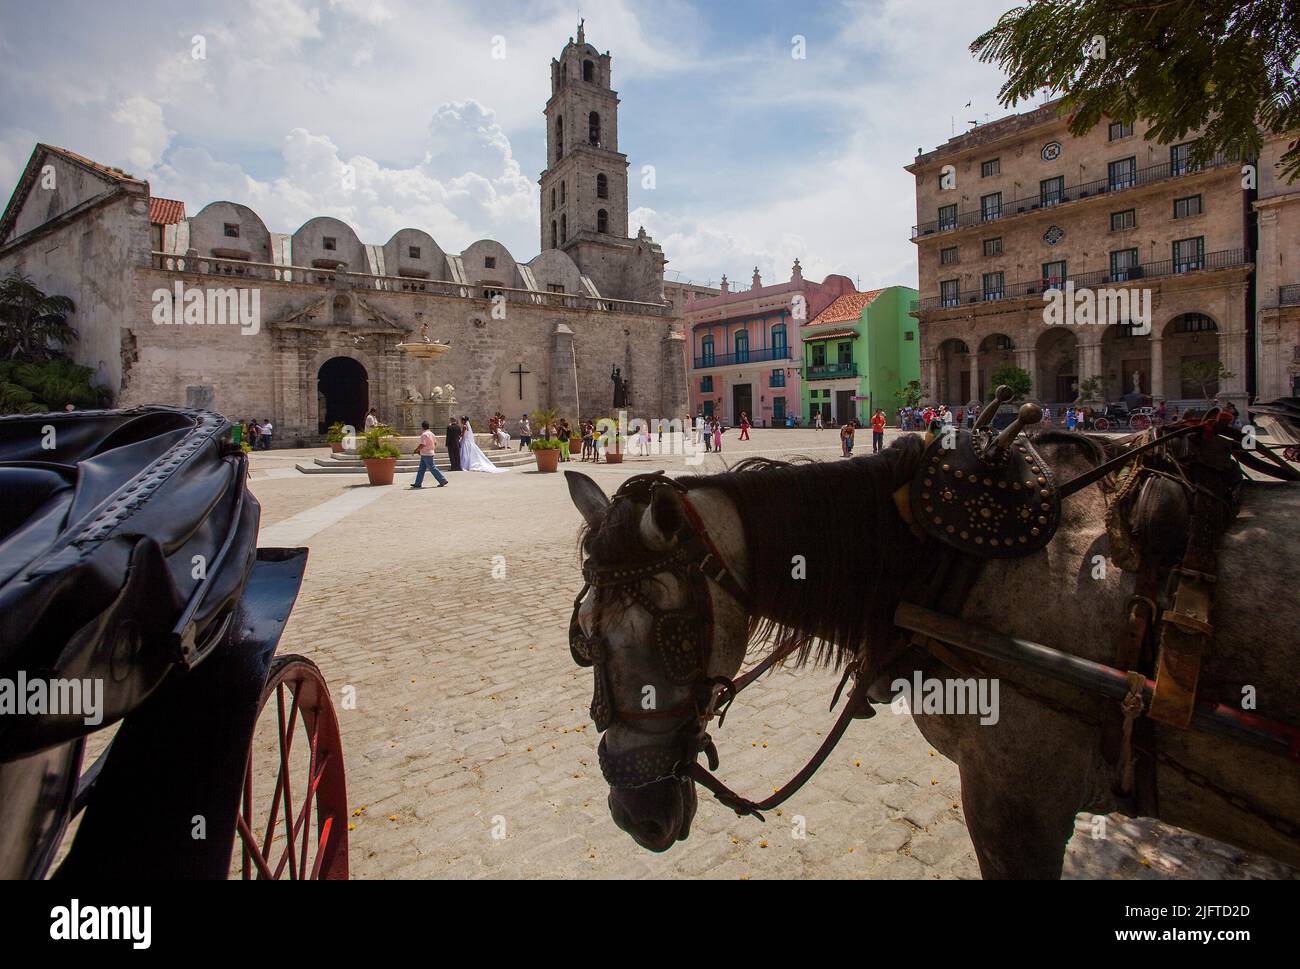 Cuba, l'Avana, Plaza de San Francisco con il convento e il Fuente de los Leones. Una coppia appena sposata sta scattando foto davanti alla fontana. Foto Stock